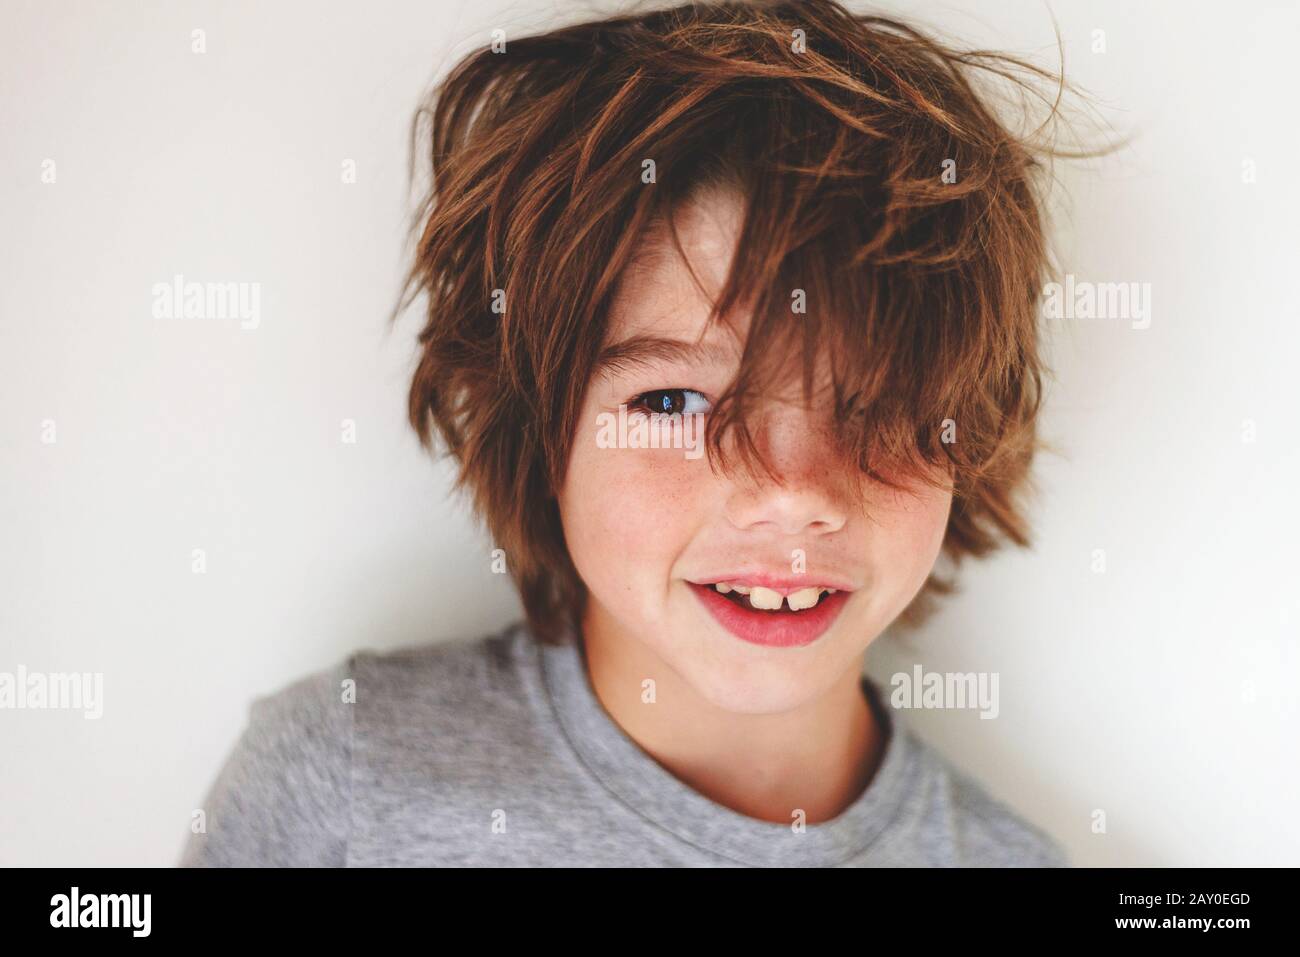 Ritratto di un ragazzo sorridente con capelli disordinati Foto Stock